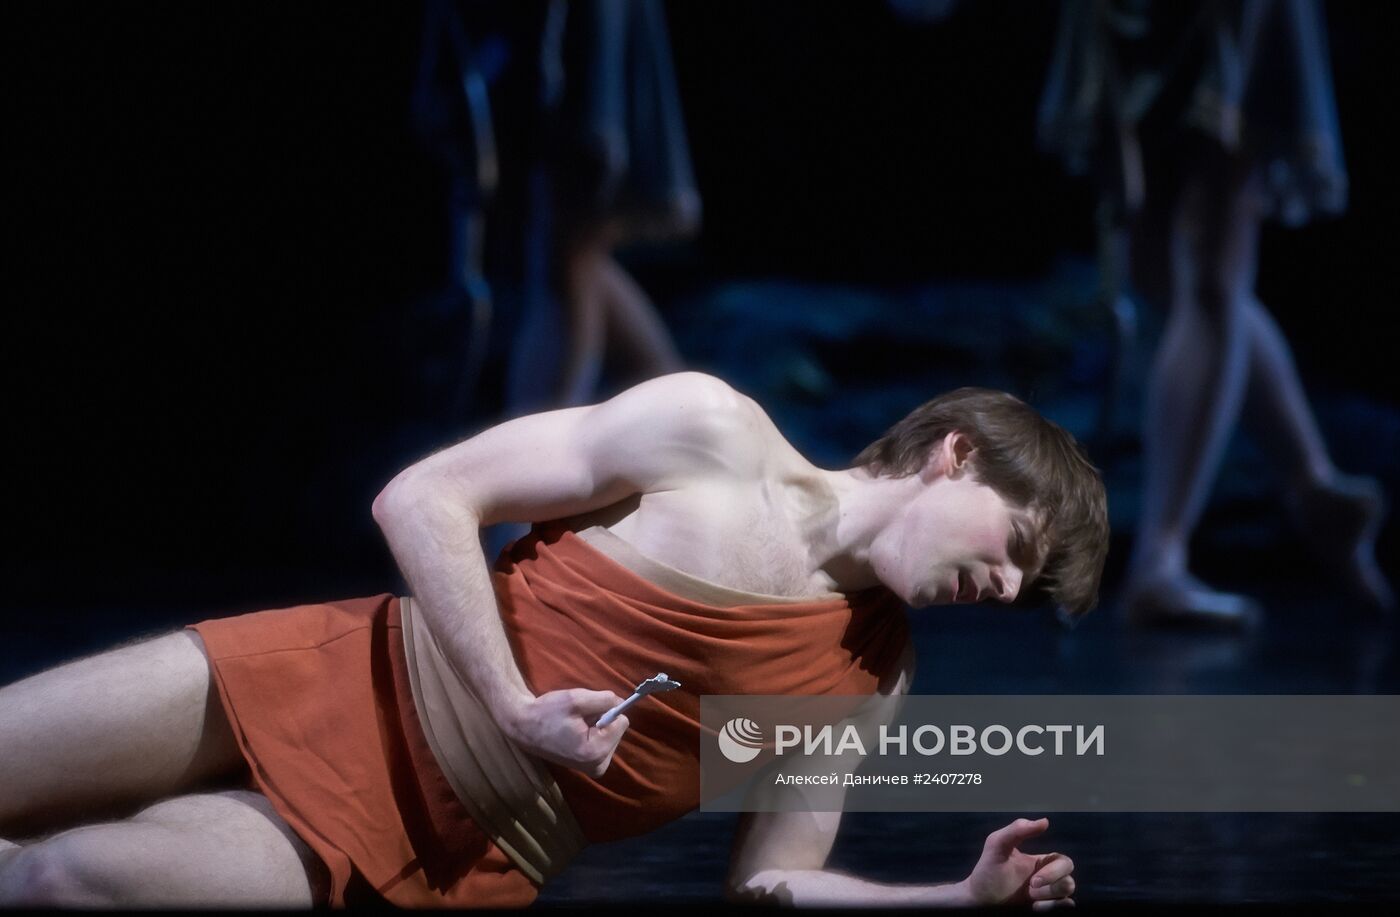 Балет "Сильвия" Лондонского Королевского балета в Санкт-Петербурге